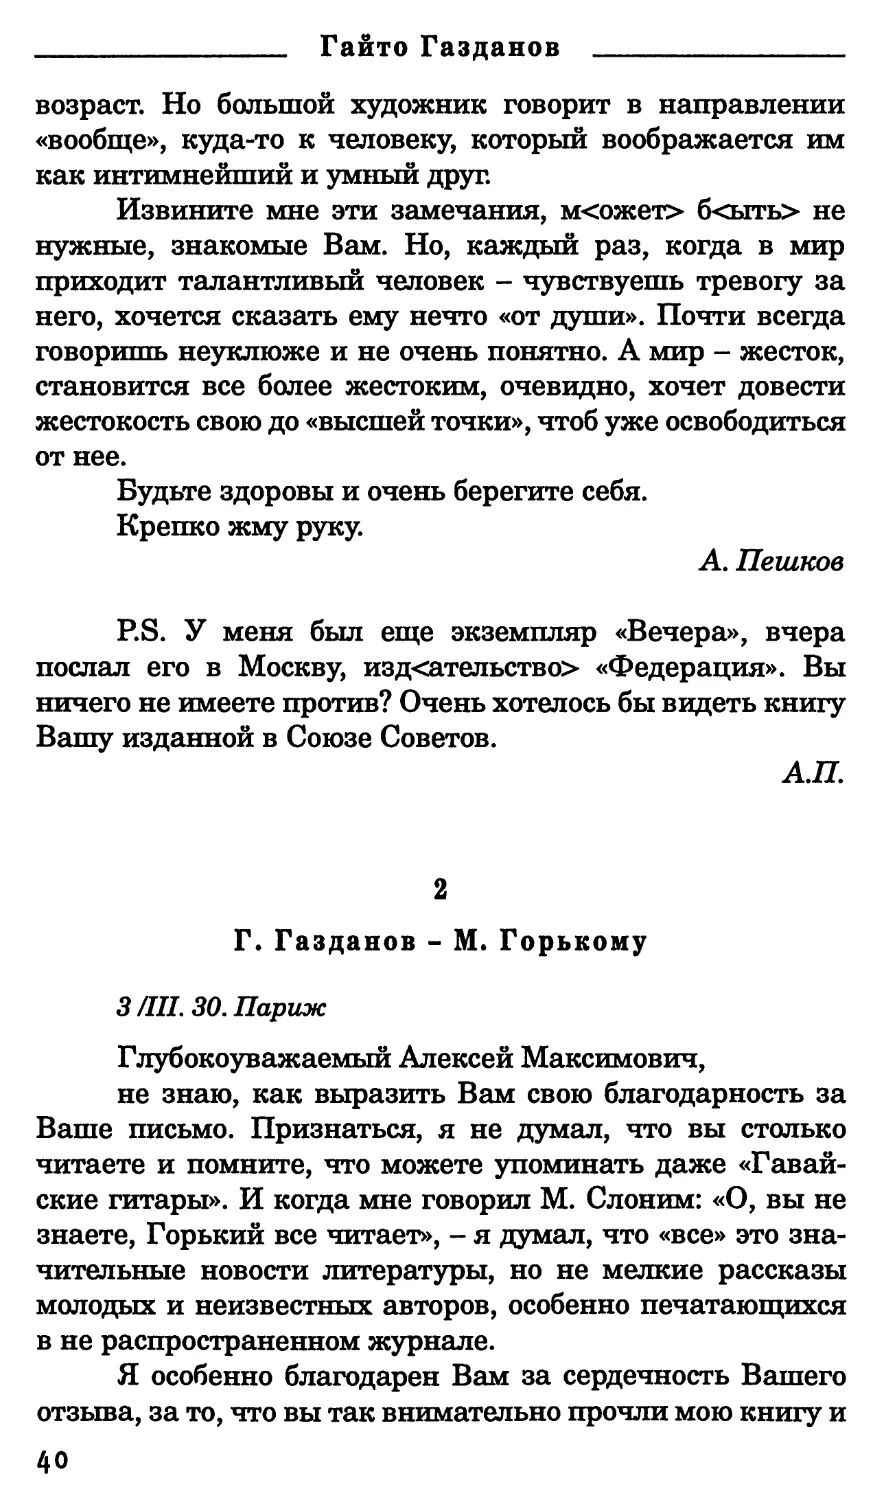 2. Г. Газданов - М. Горькому. 3 марта 1930 г.